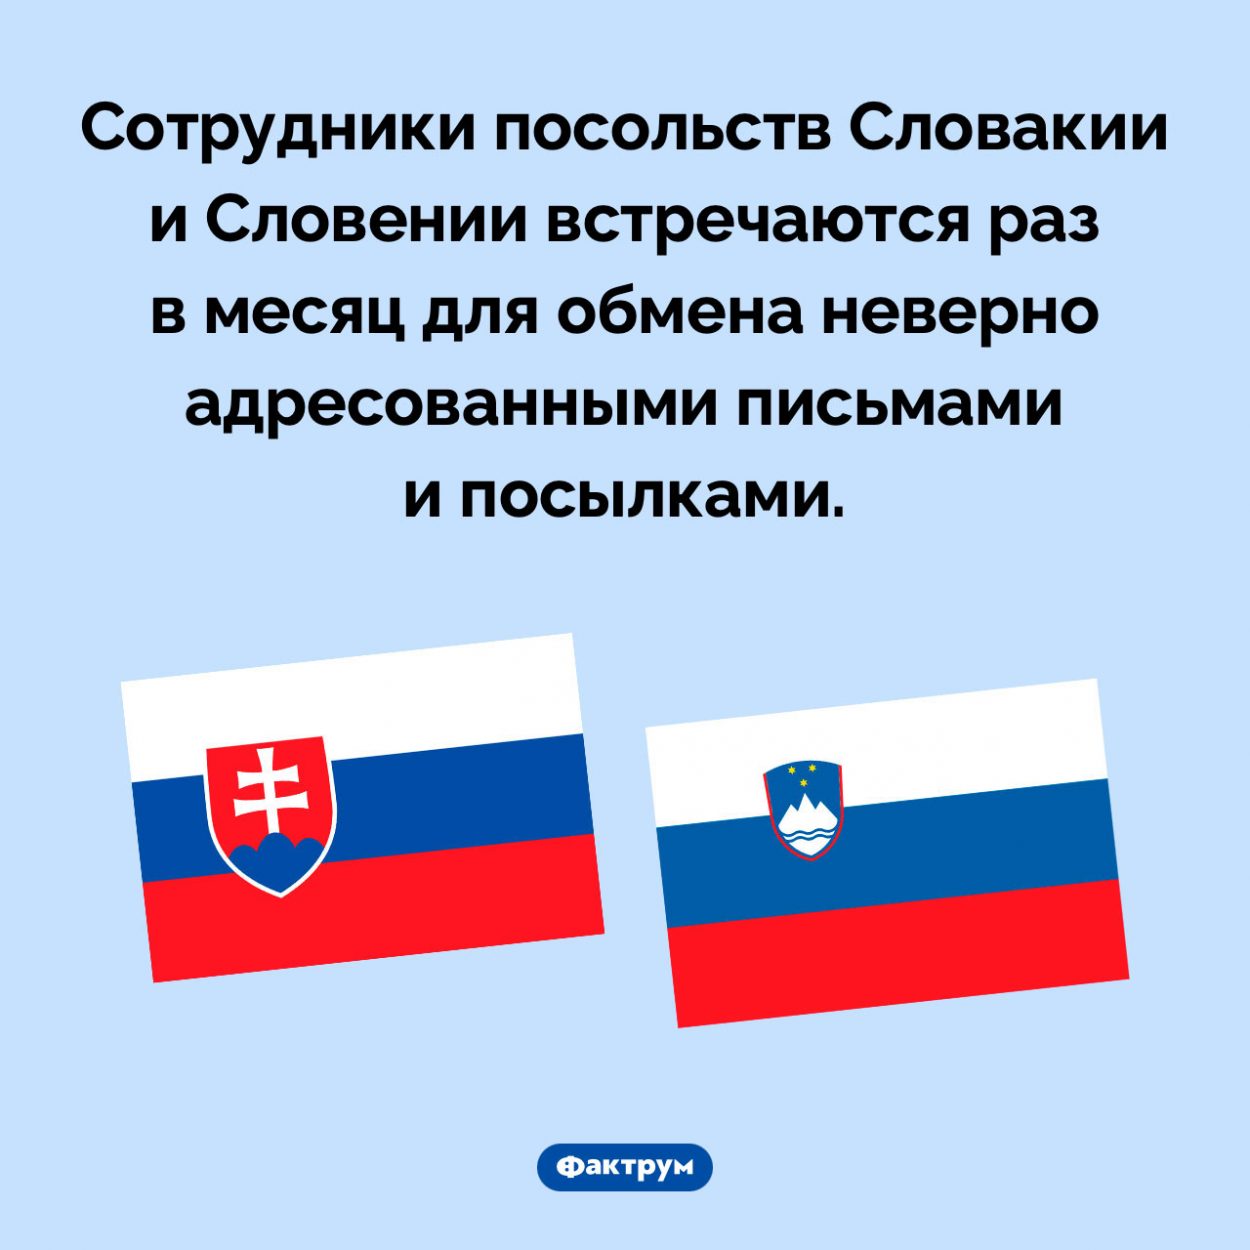 Словакия, Словения и обмен почтой. Сотрудники посольств Словакии и Словении встречаются раз в месяц для обмена неверно адресованными письмами и посылками.